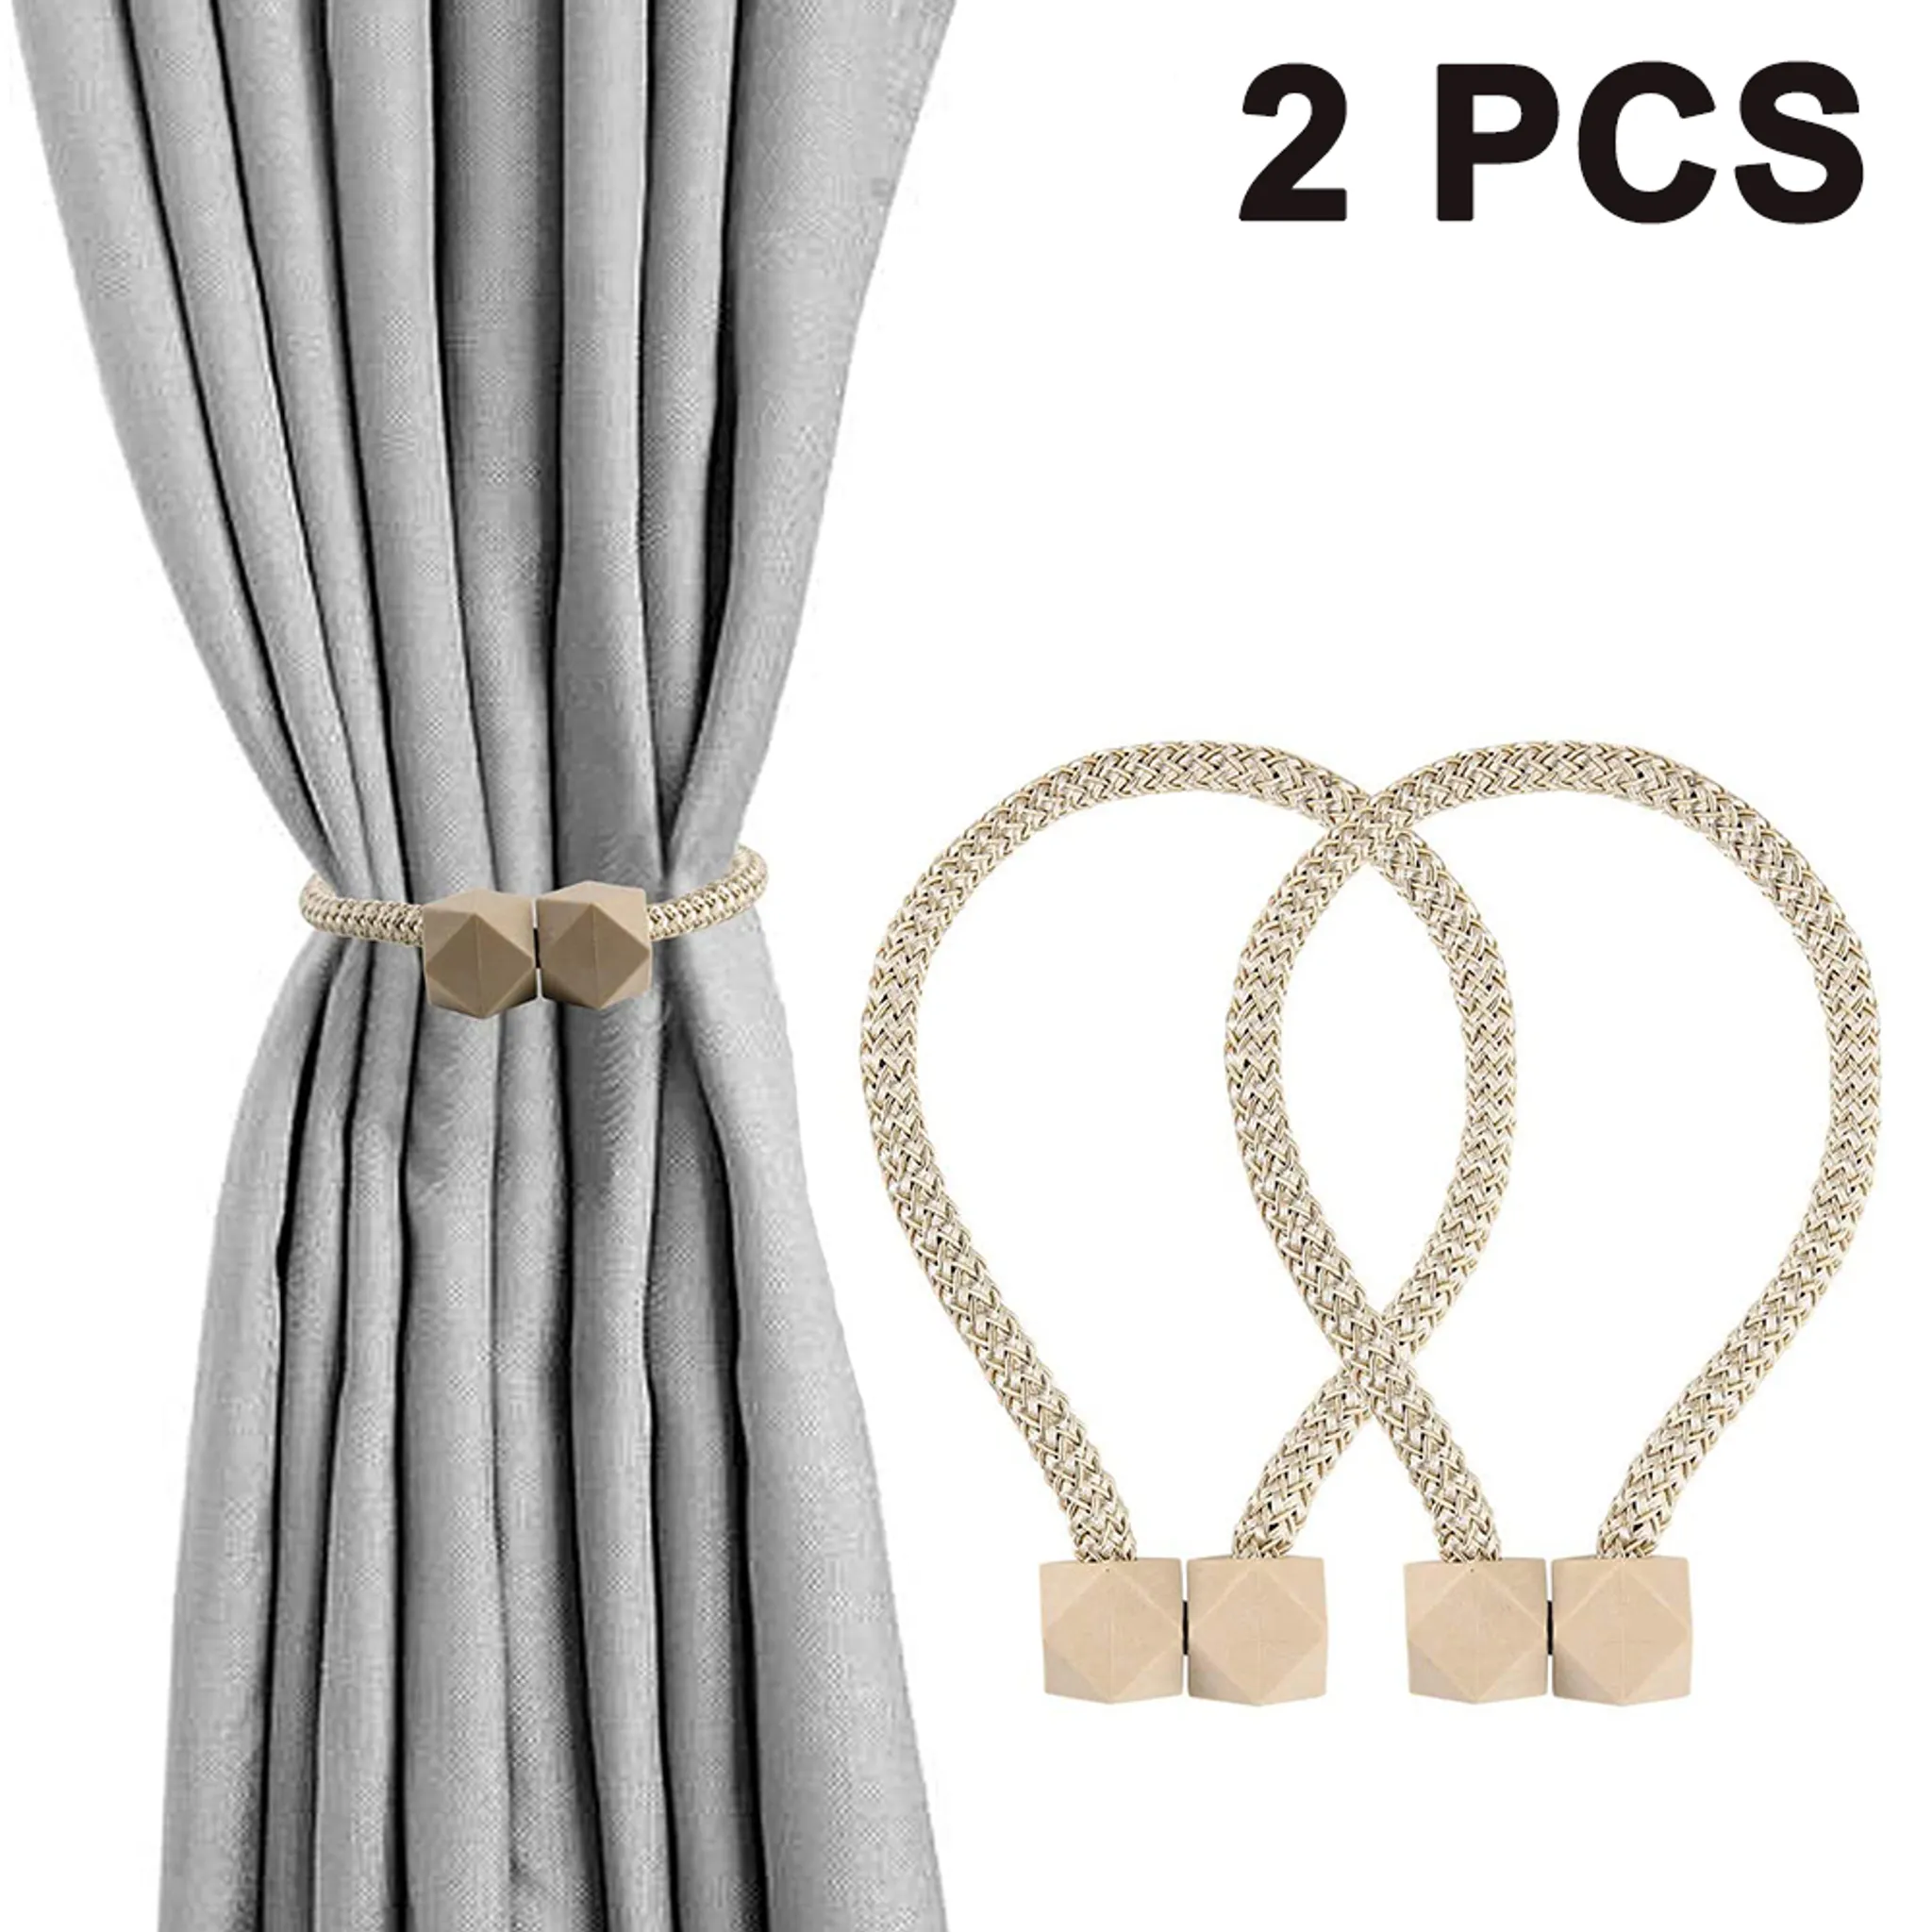 2Pcs Kristall Perlen Quaste Vorhang Tieback Dekorative Vorhang